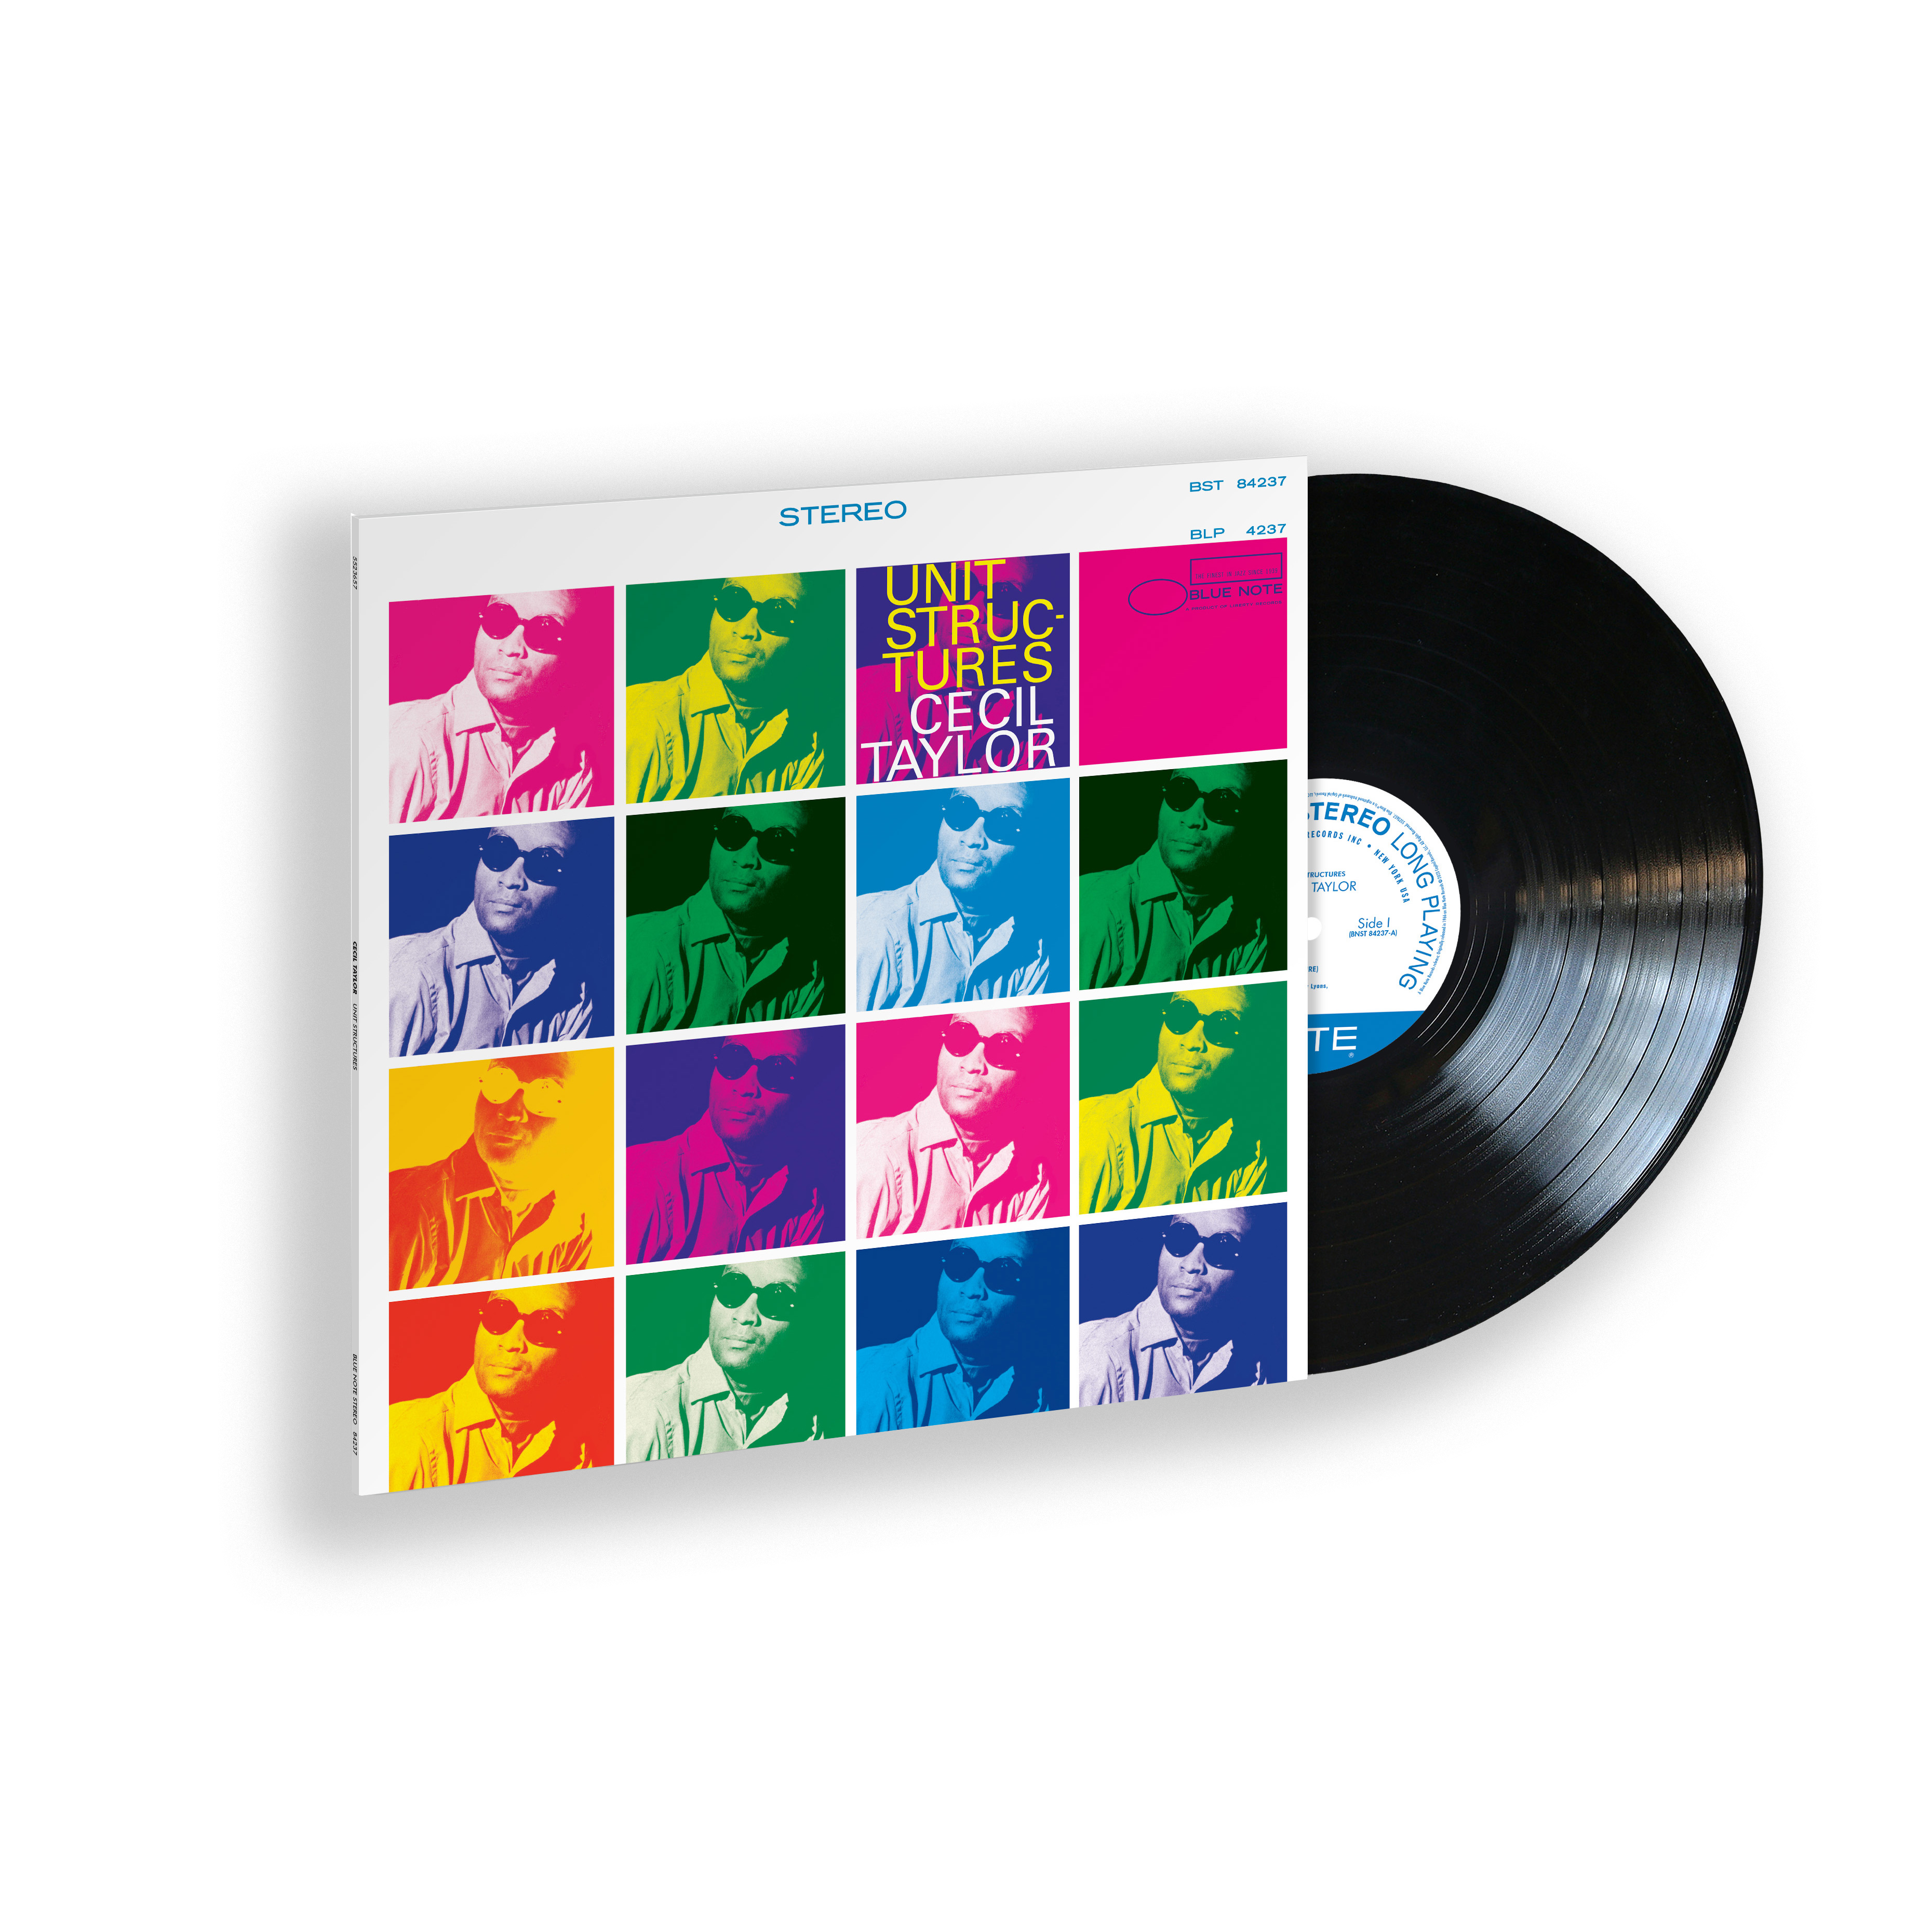 Cecil Taylor - Unit Structures (Classic Vinyl Series): Vinyl LP